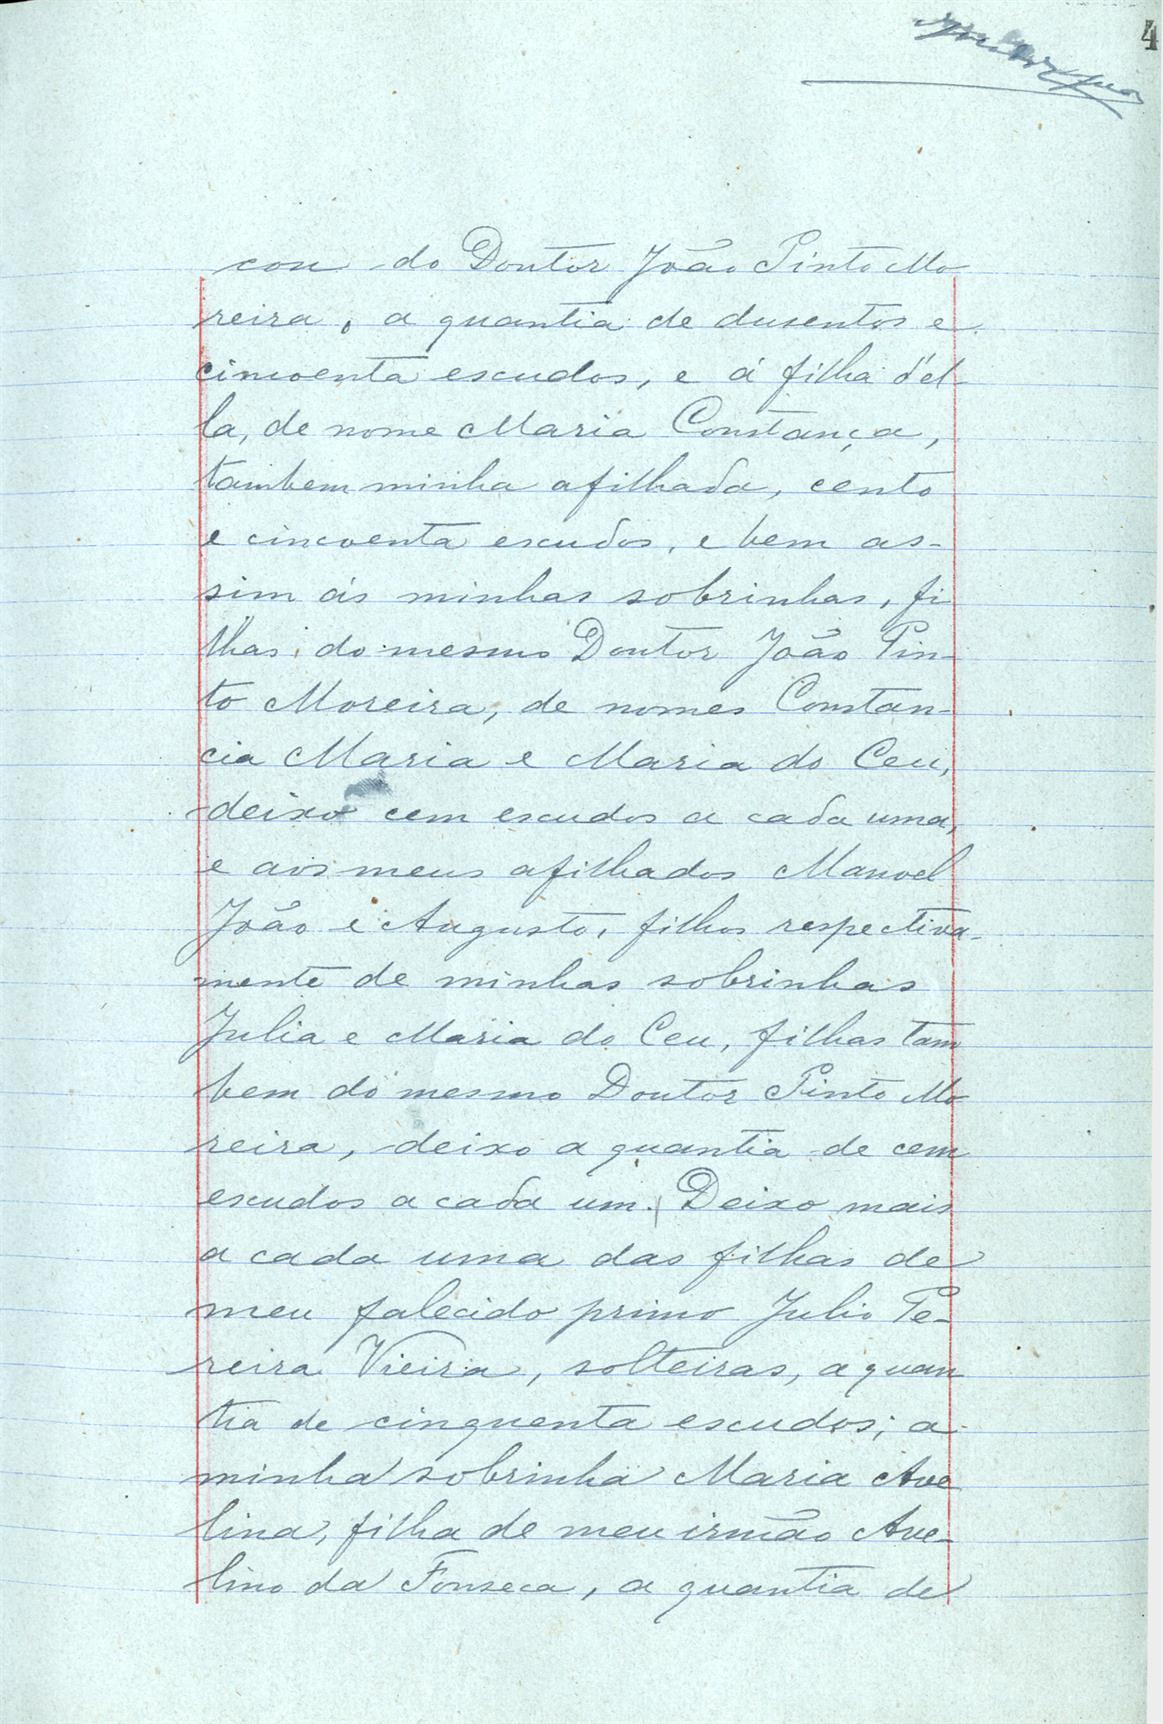 Registo do testamento com que faleceu Manuel Eleutério Pereira da Fonseca, proprietário, casado com Ana Cândida Moreira da Fonseca